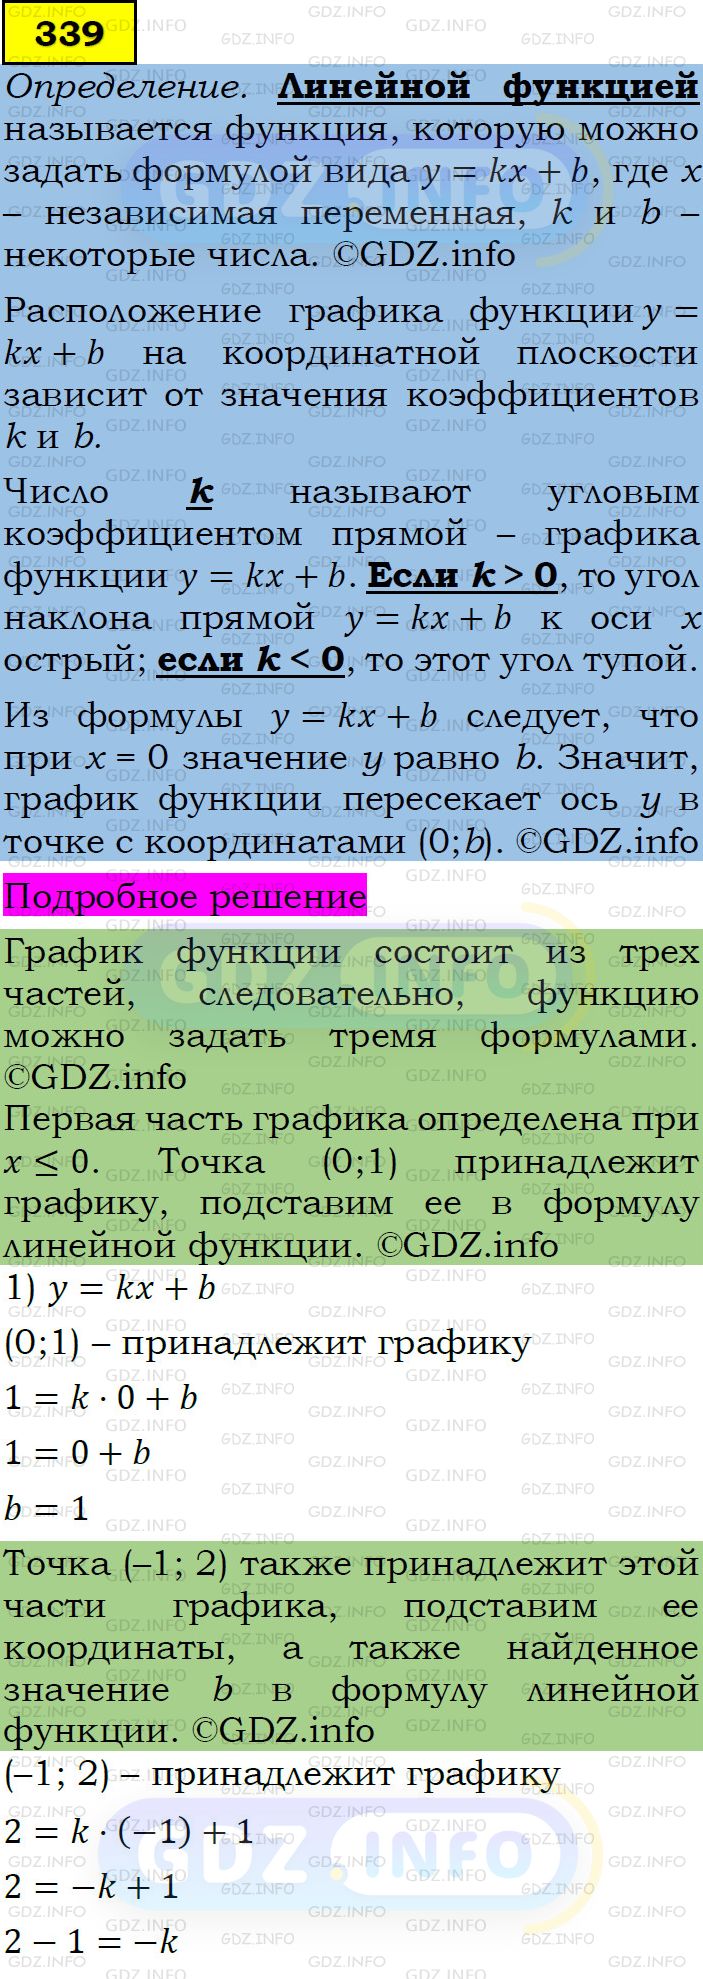 Фото подробного решения: Номер задания №339 из ГДЗ по Алгебре 7 класс: Макарычев Ю.Н.